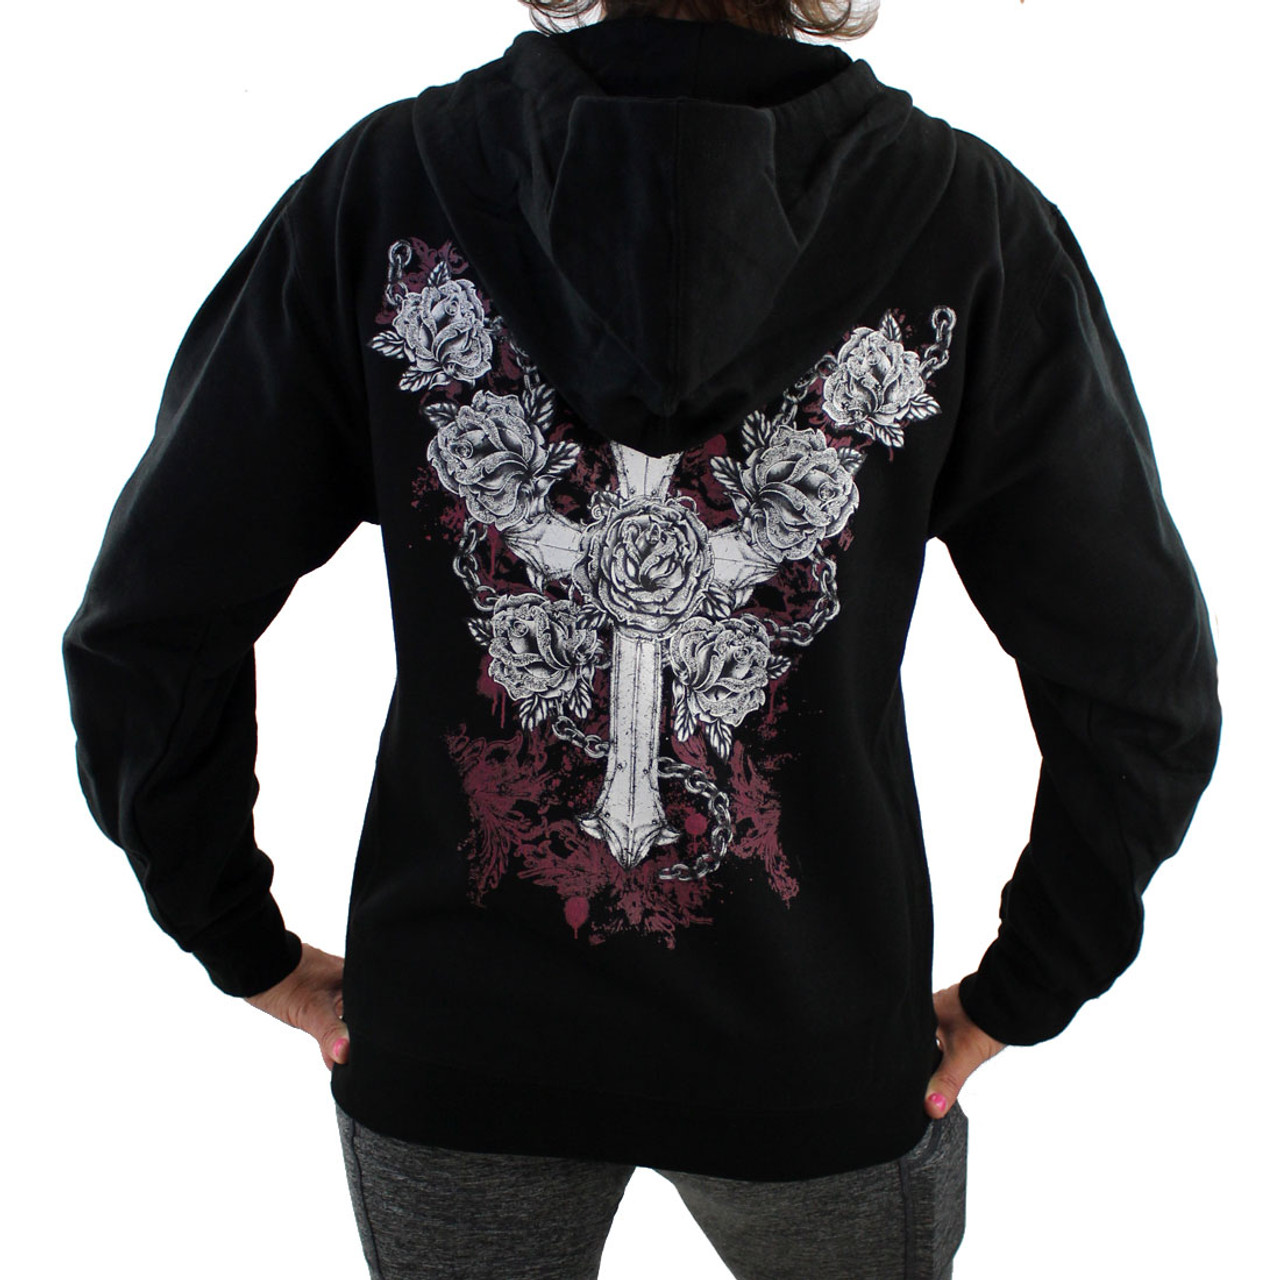 Black Fleece Zipper Hoodie Sweatshirt Cross and Roses